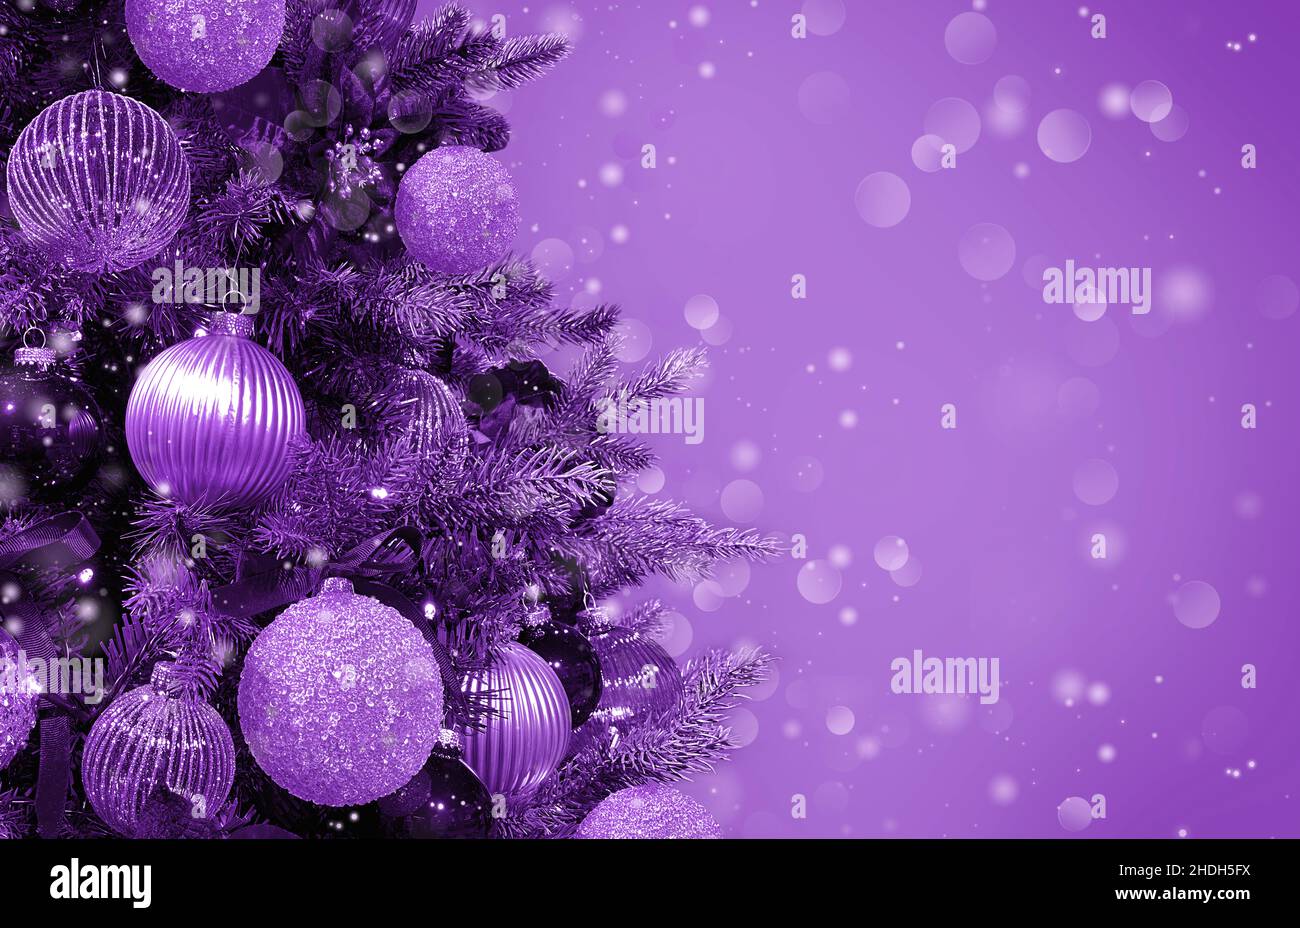 Những vật dụng trang trí cây thông Giáng Sinh kỳ diệu với những họa tiết, màu sắc đẹp mắt sẽ làm cuốn hút bạn ngay từ cái nhìn đầu tiên. Hãy cùng chiêm ngưỡng những bức hình về những đồ trang trí Giáng Sinh để thêm phần lung linh cho thời gian đặc biệt này.